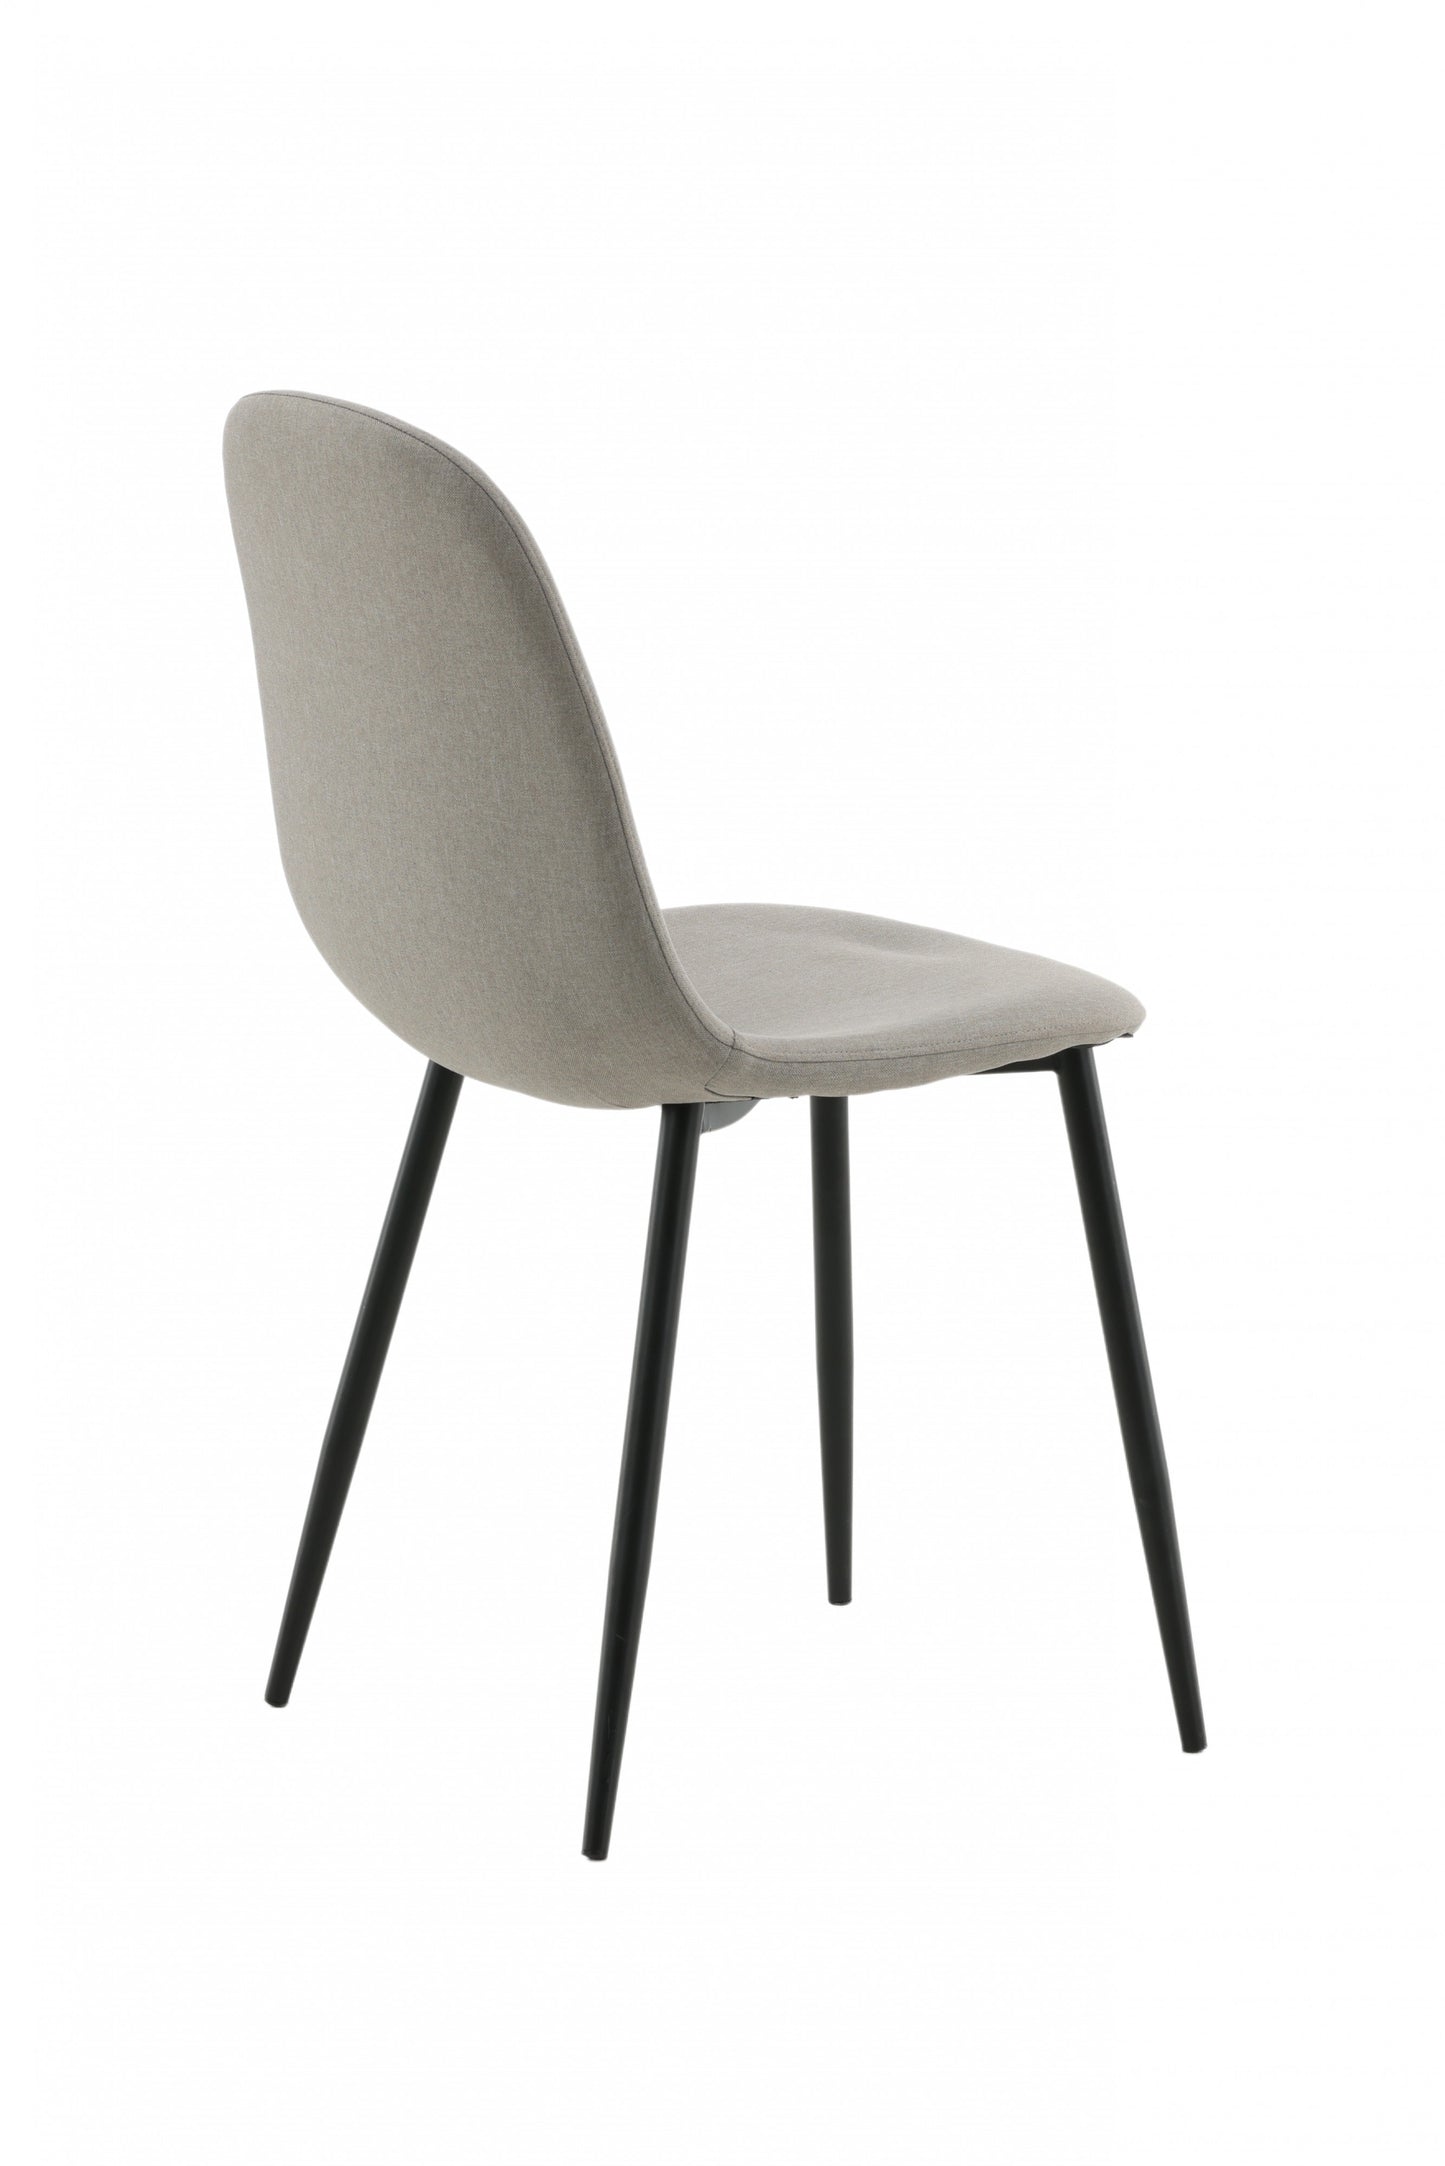 Venture-Design | Polar Chair - Grauer Stoff, schwarze Beine